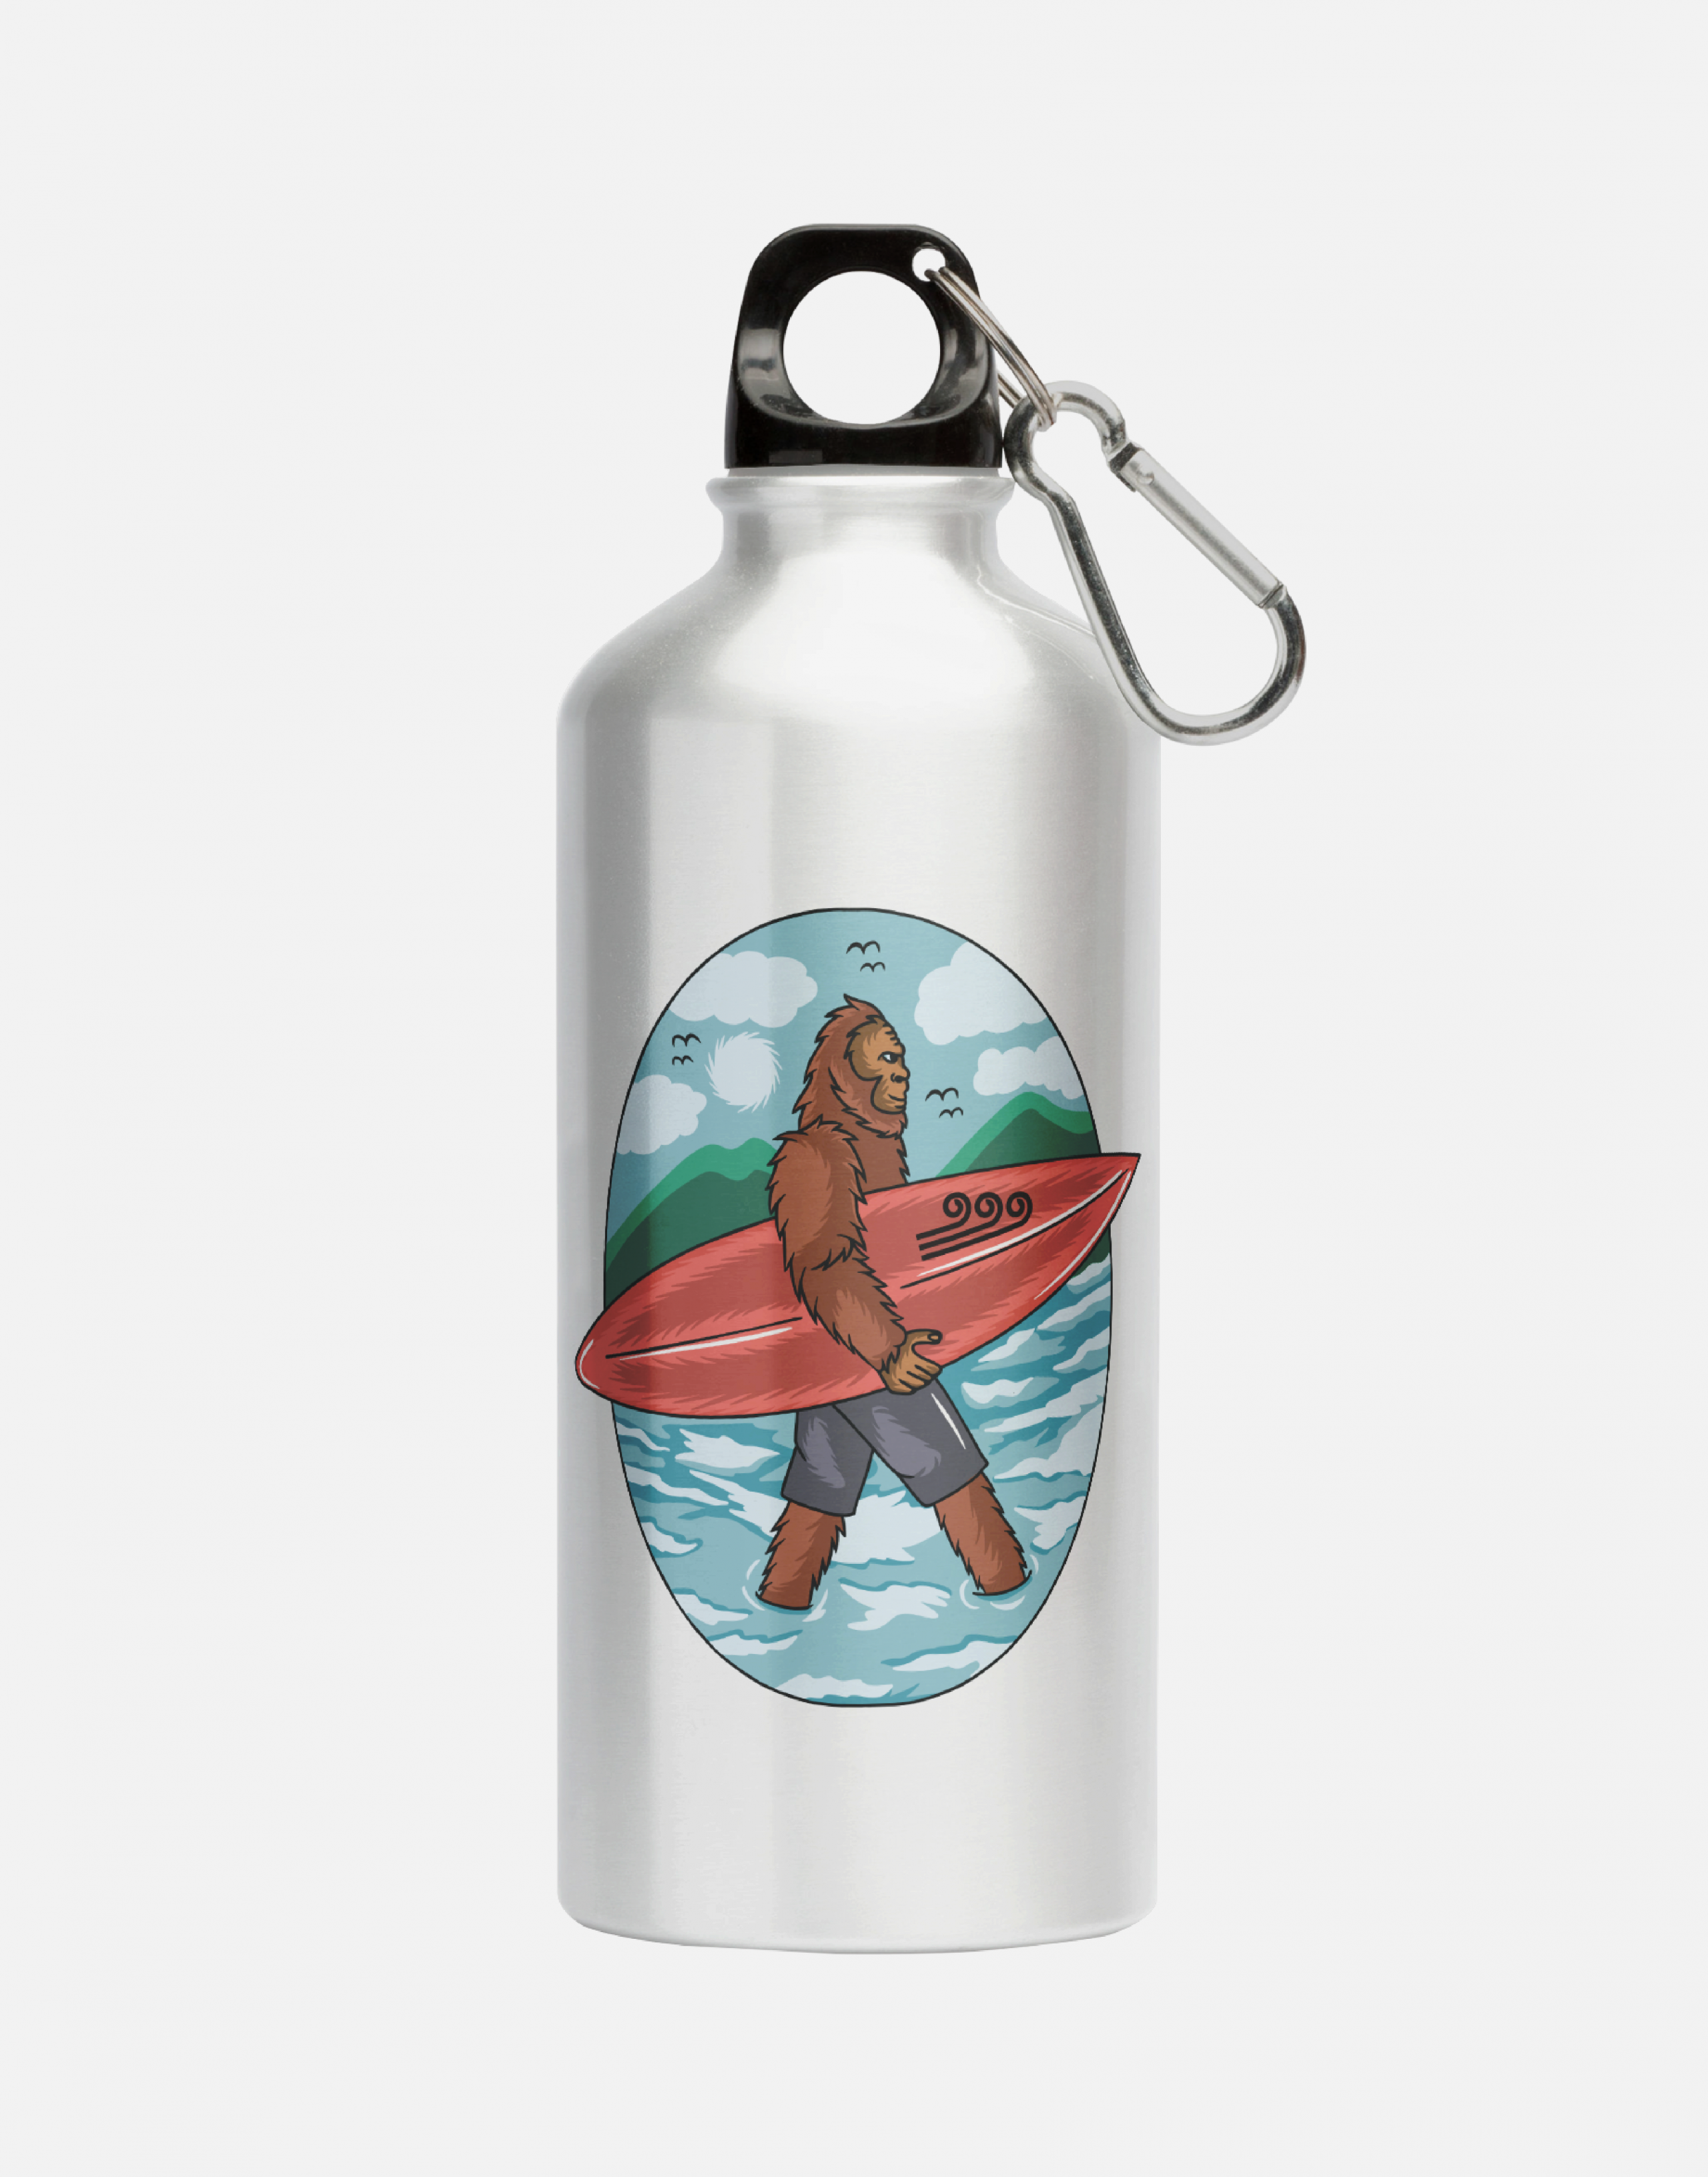 Aluminum lightweight reusable water bottle with Swellone bigfoot beach design.